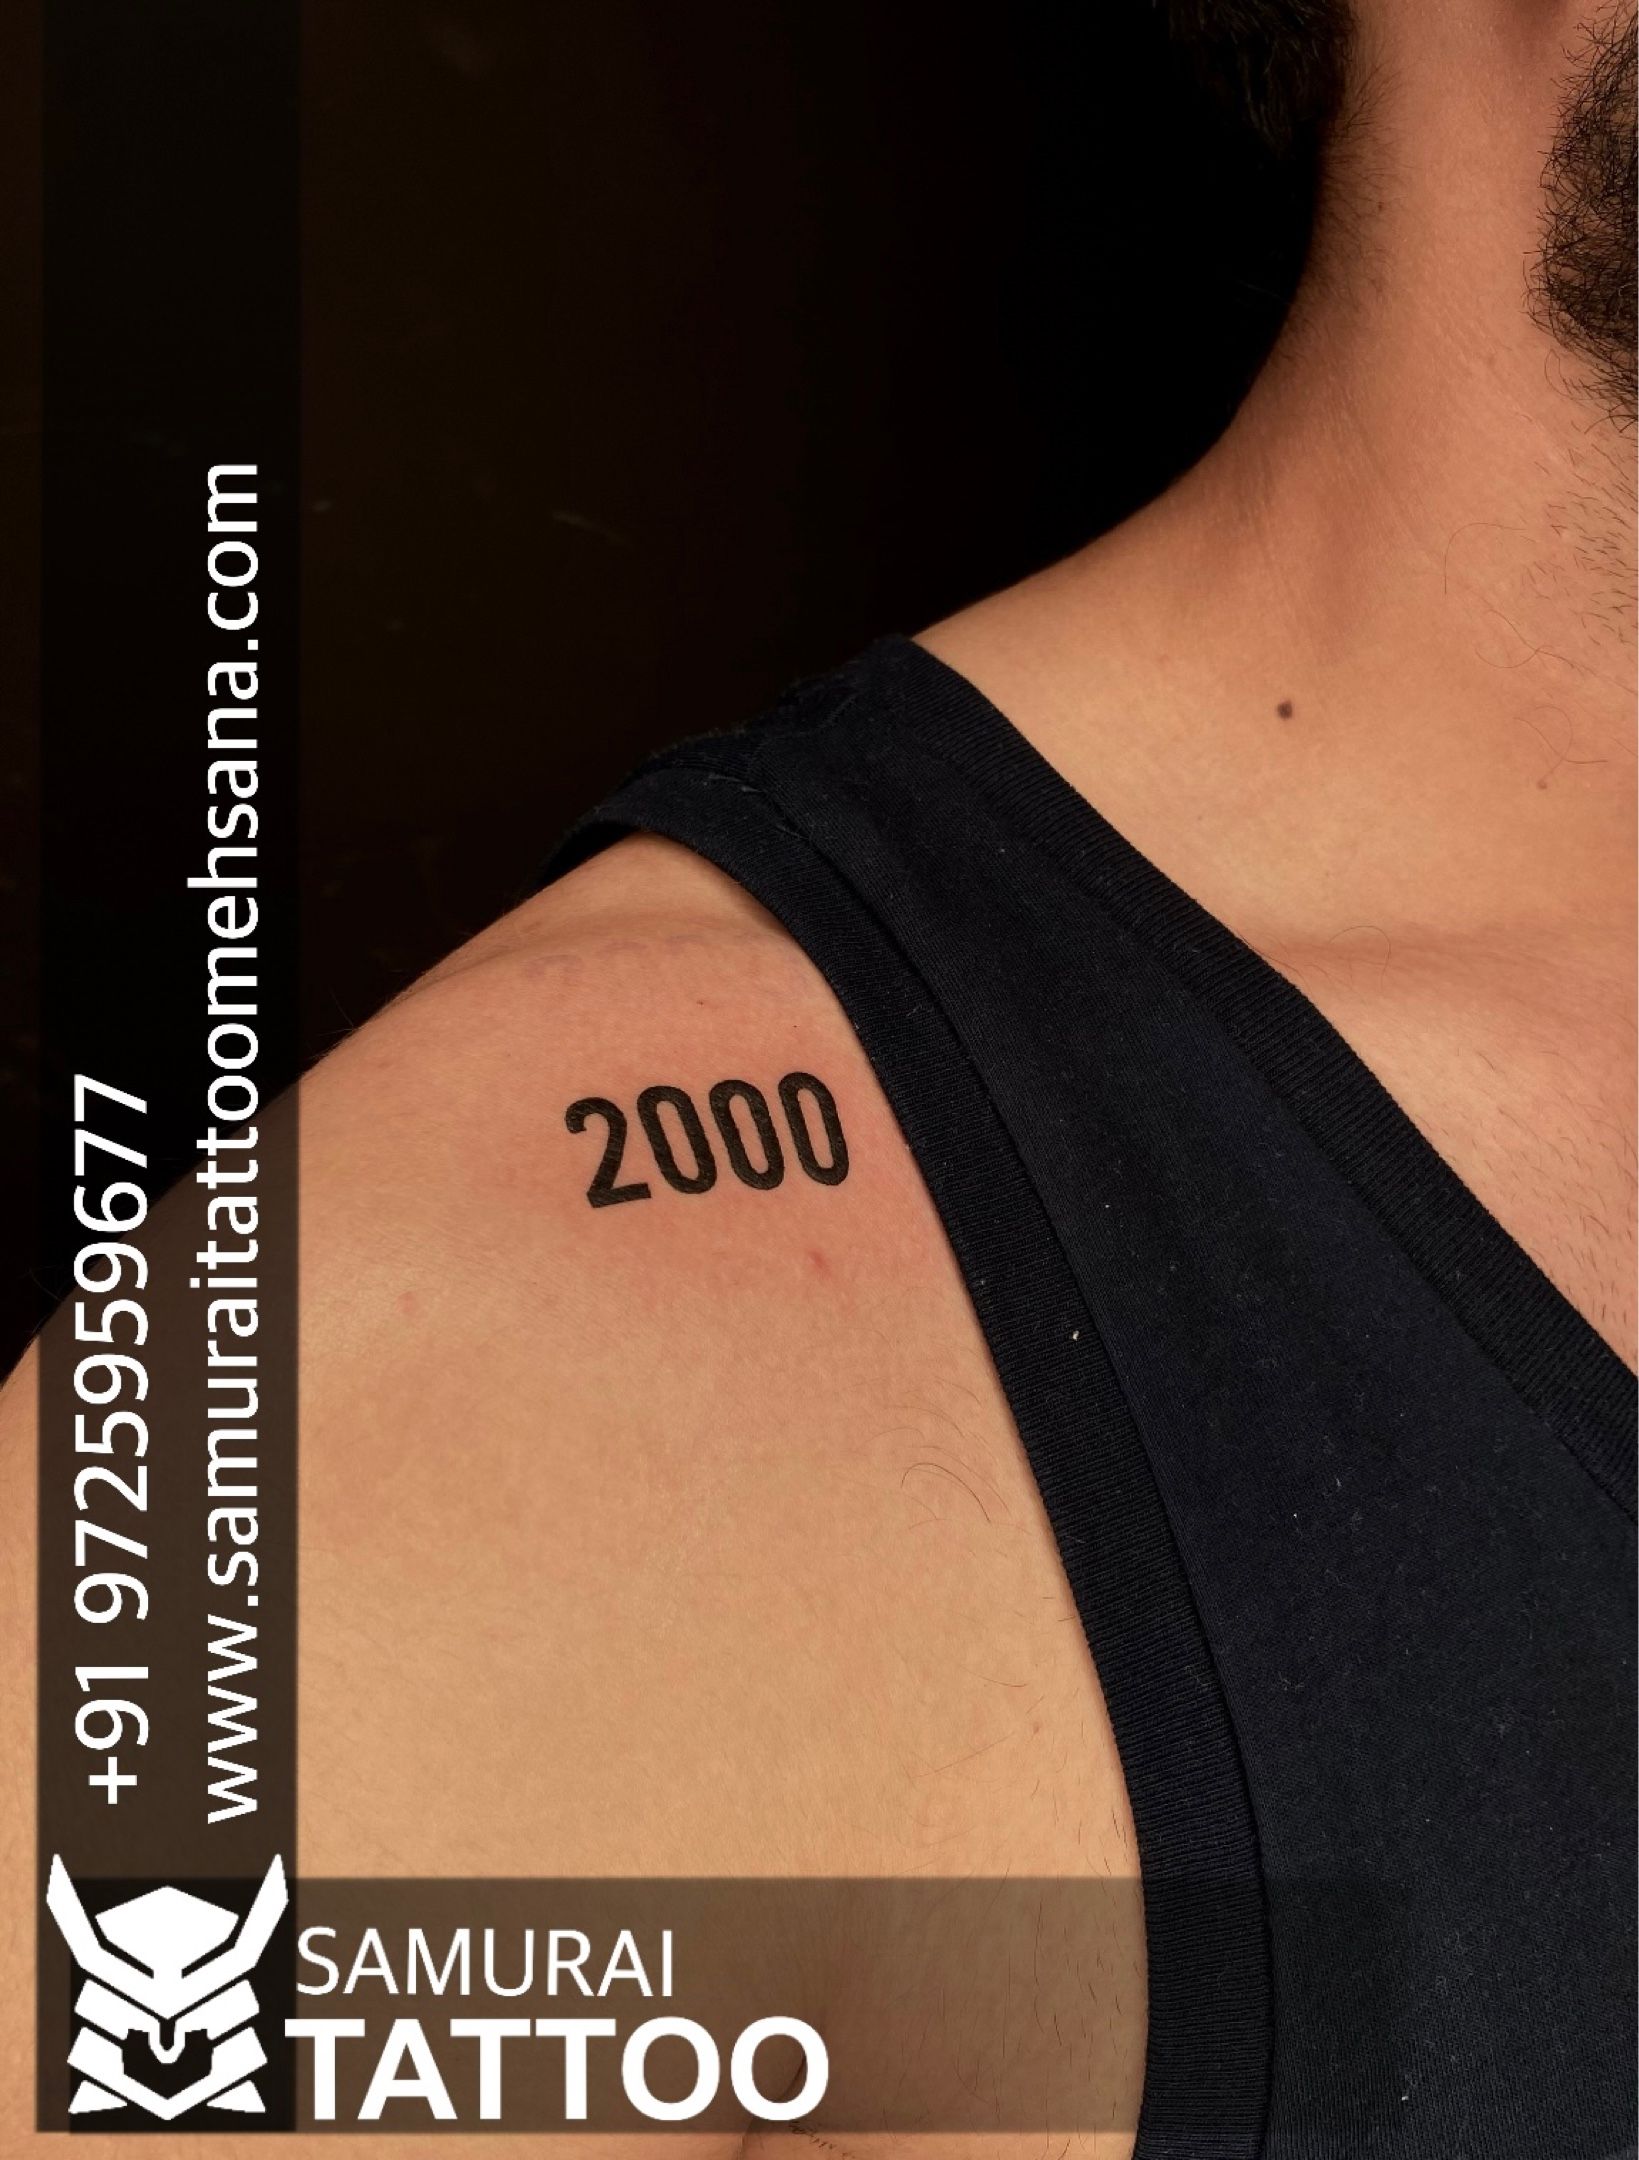 jordanrhystattooer year2000  Redemption Tattoo Studio  Facebook